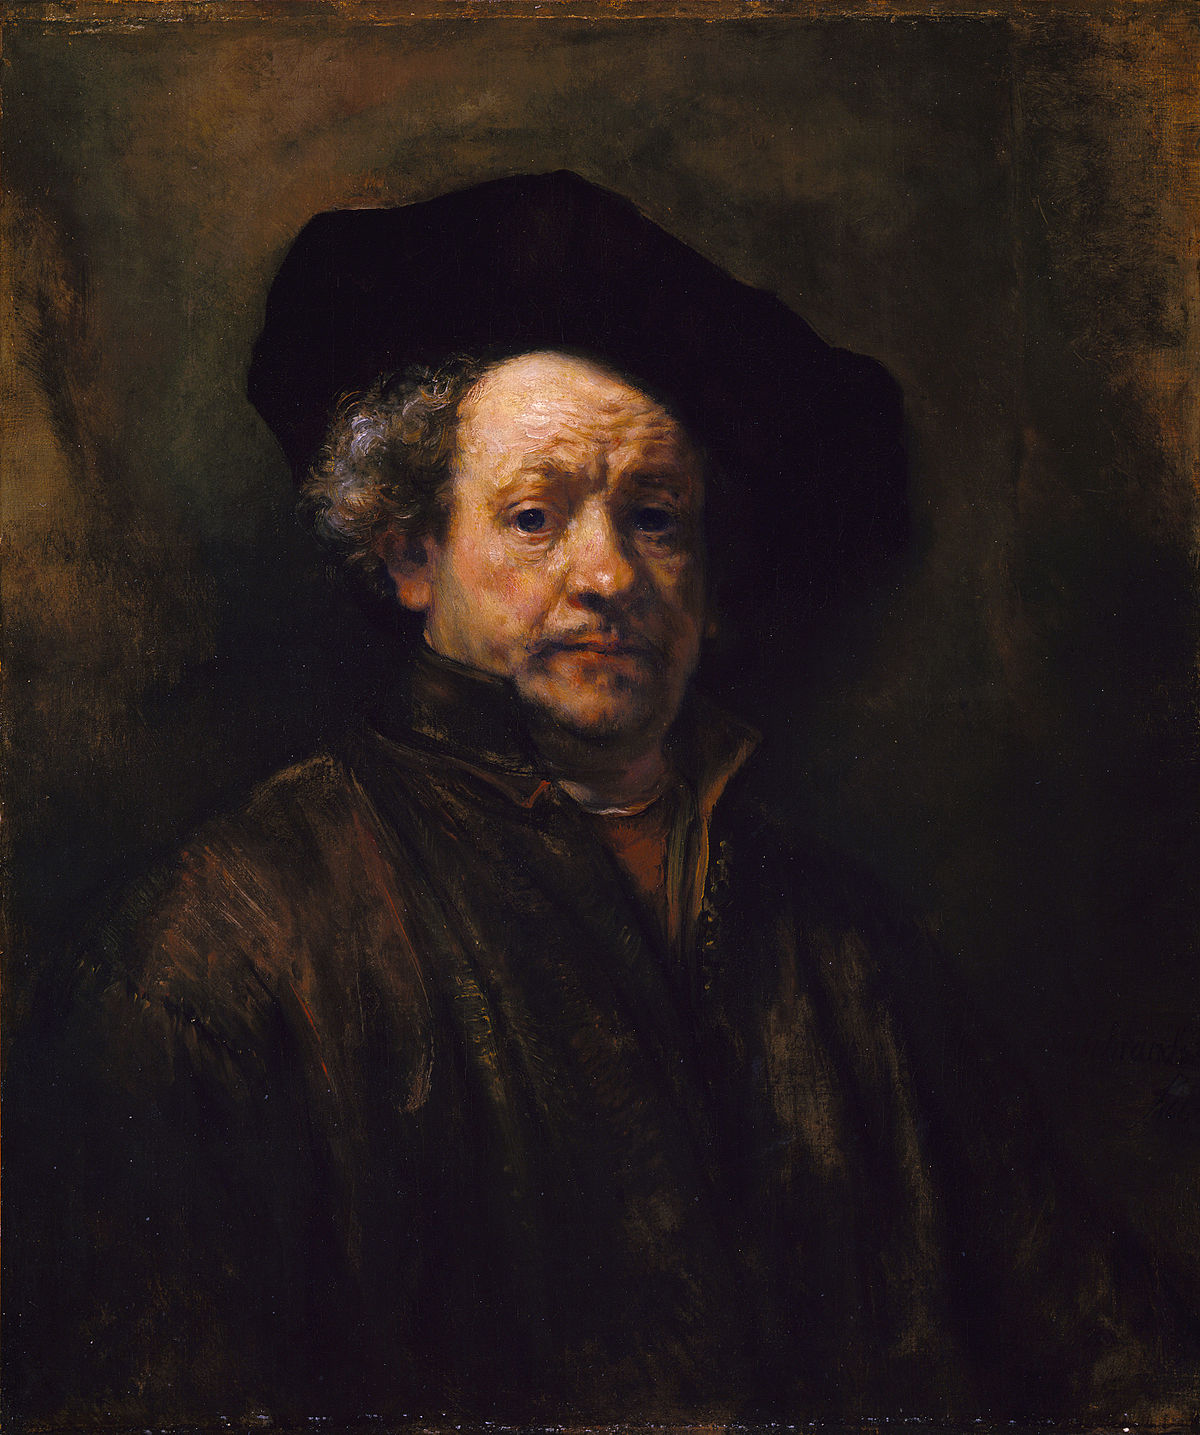 Portrait de l'âge - Rembrandt van Rijn